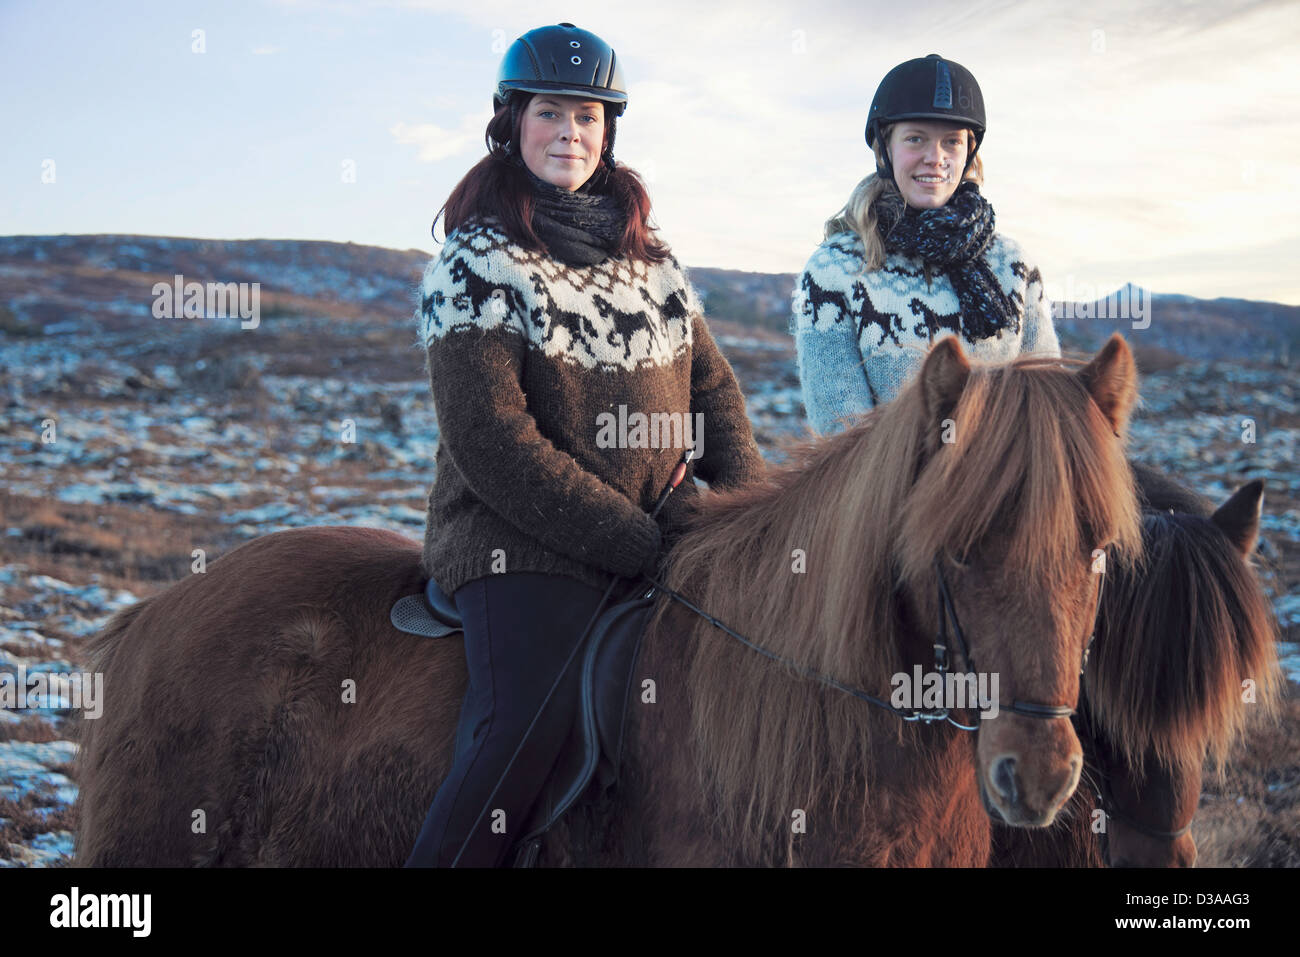 Les femmes de l'équitation en plein air Banque D'Images